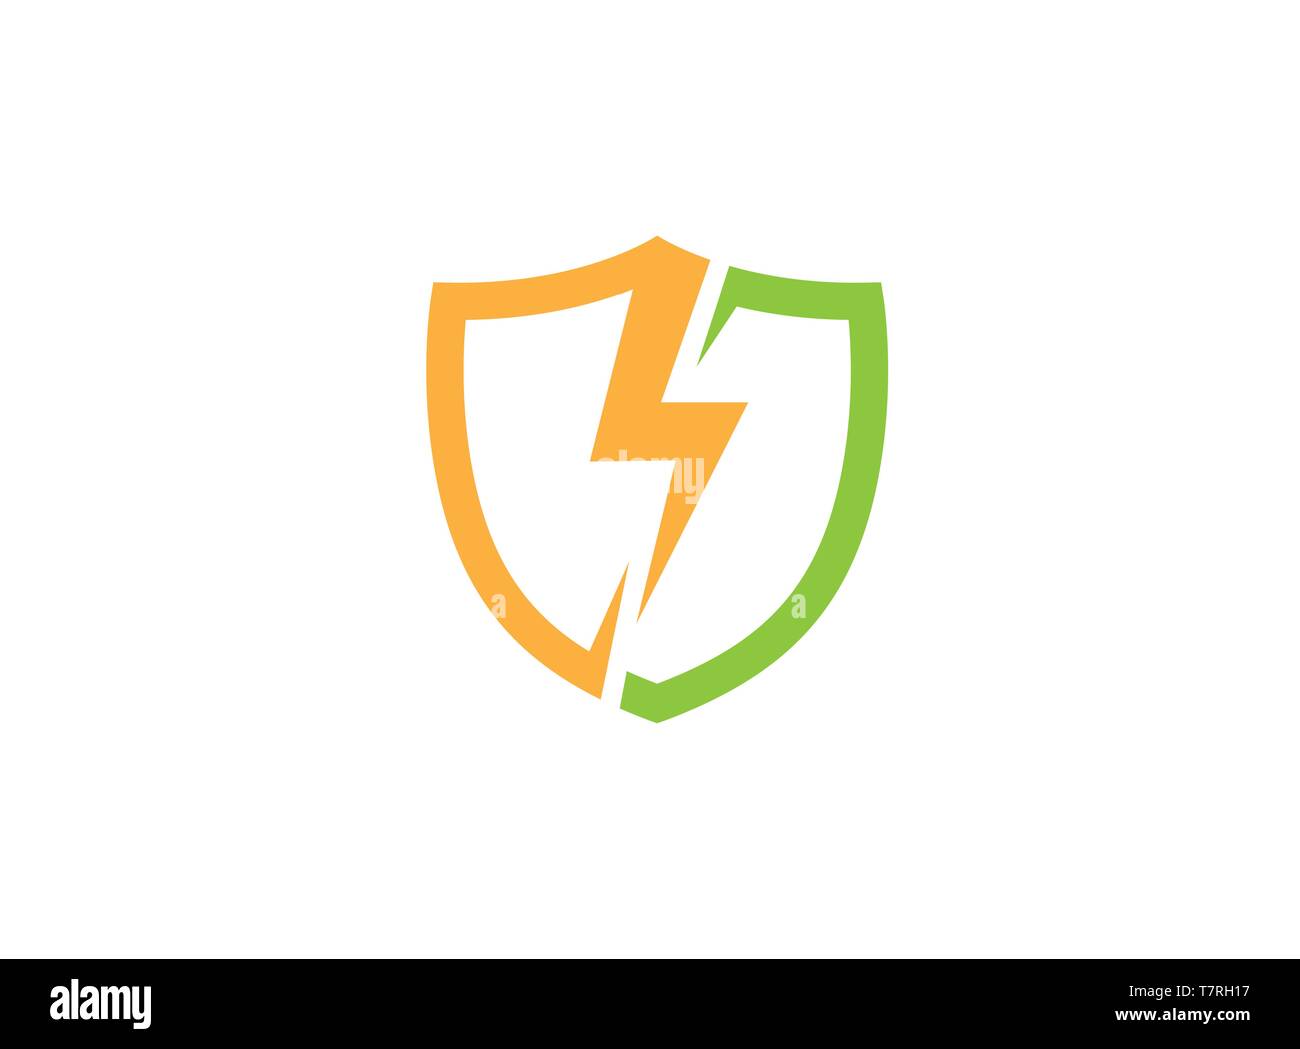 Department of Shield by lightning strike logo design illustration on white background Stock Vector